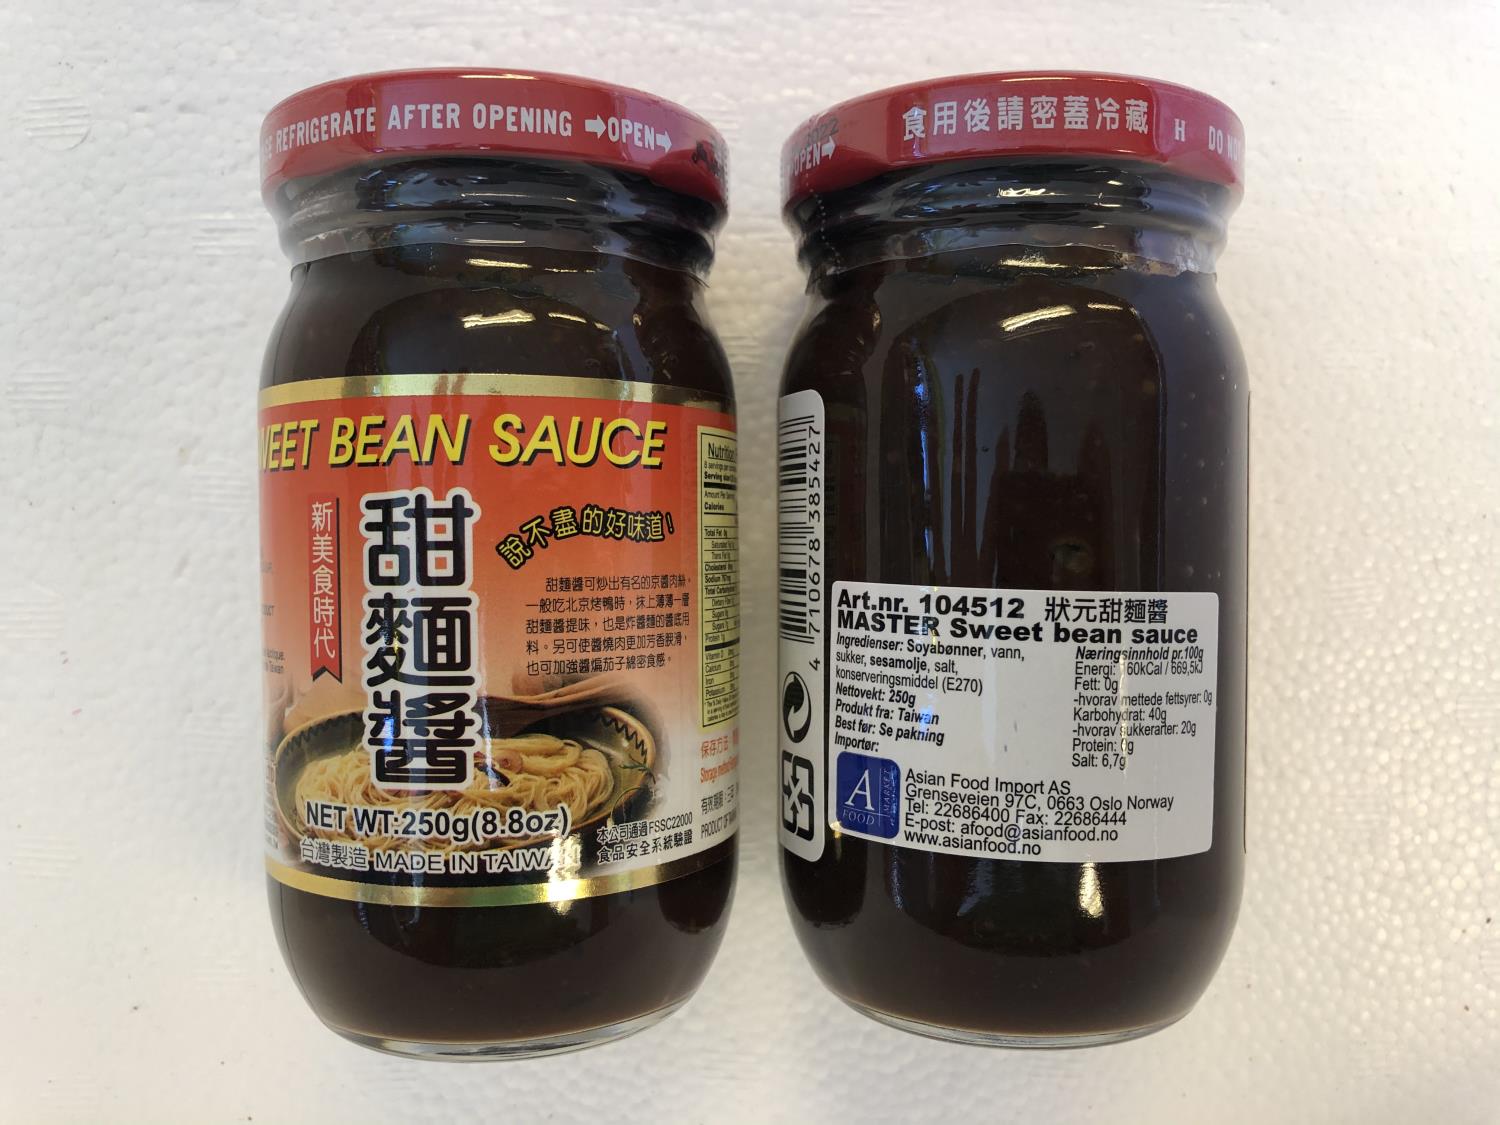 'MASTER Sweet Bean Sauce 250gr